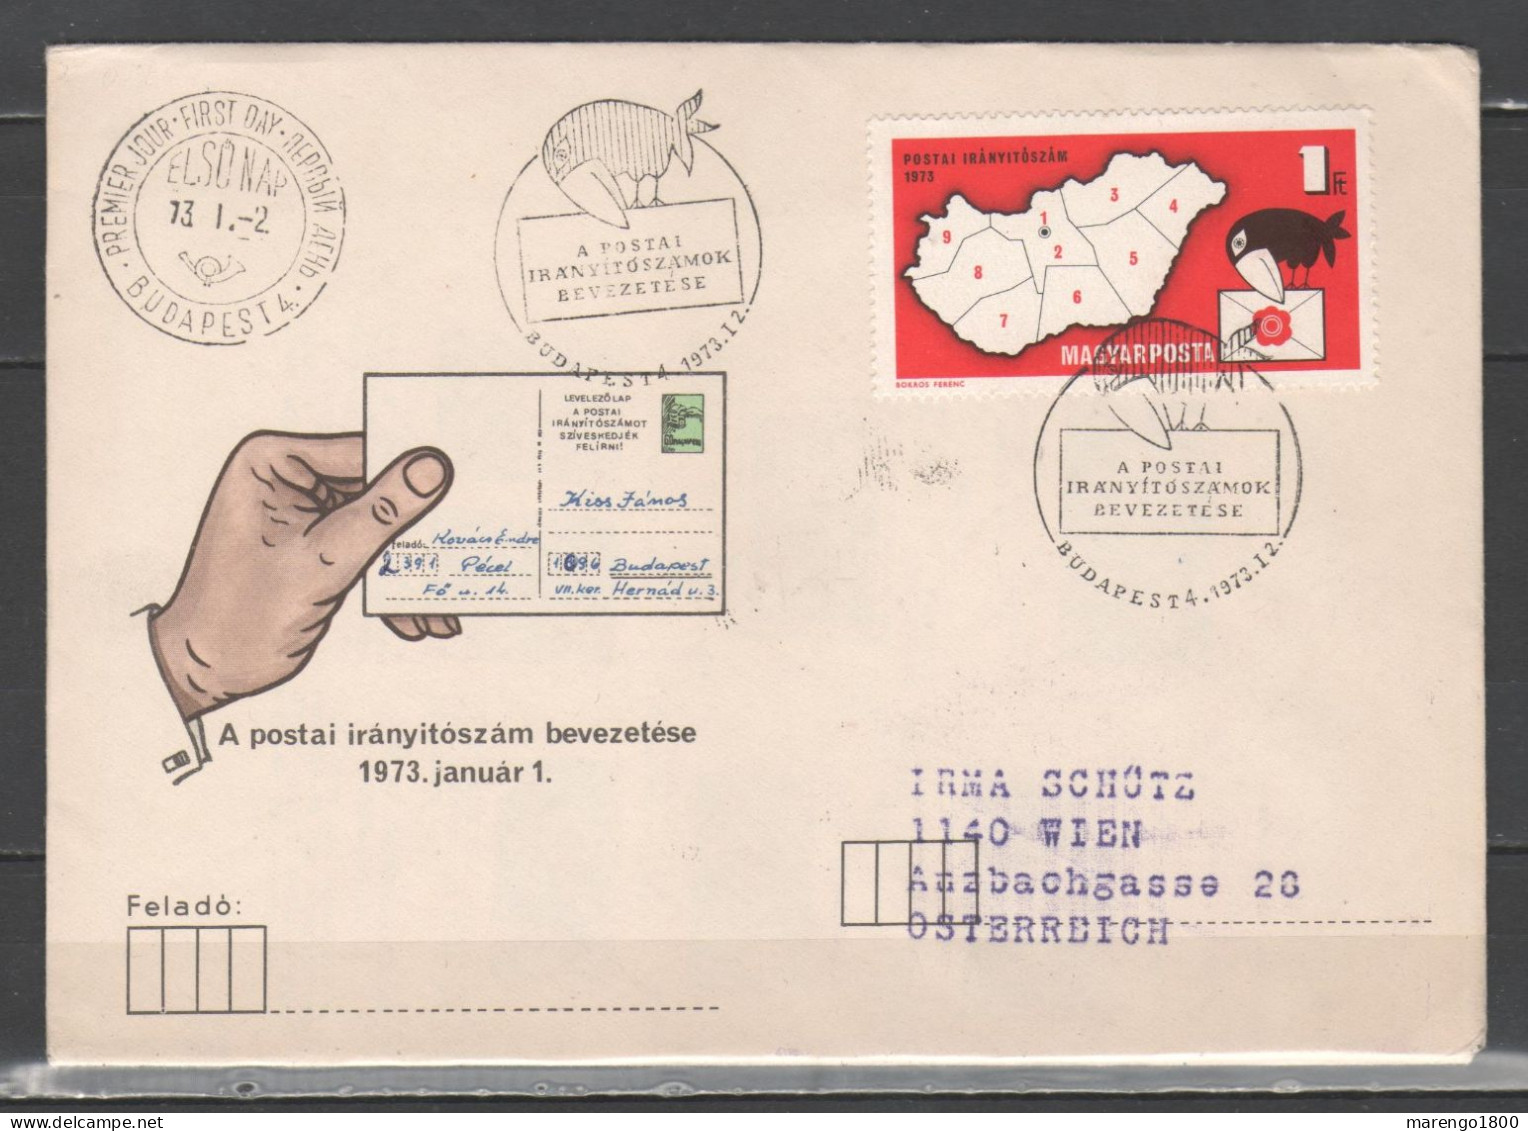 Hungary 1973 - Postal Code (Postai Iranyitoszam) Fdc - FDC